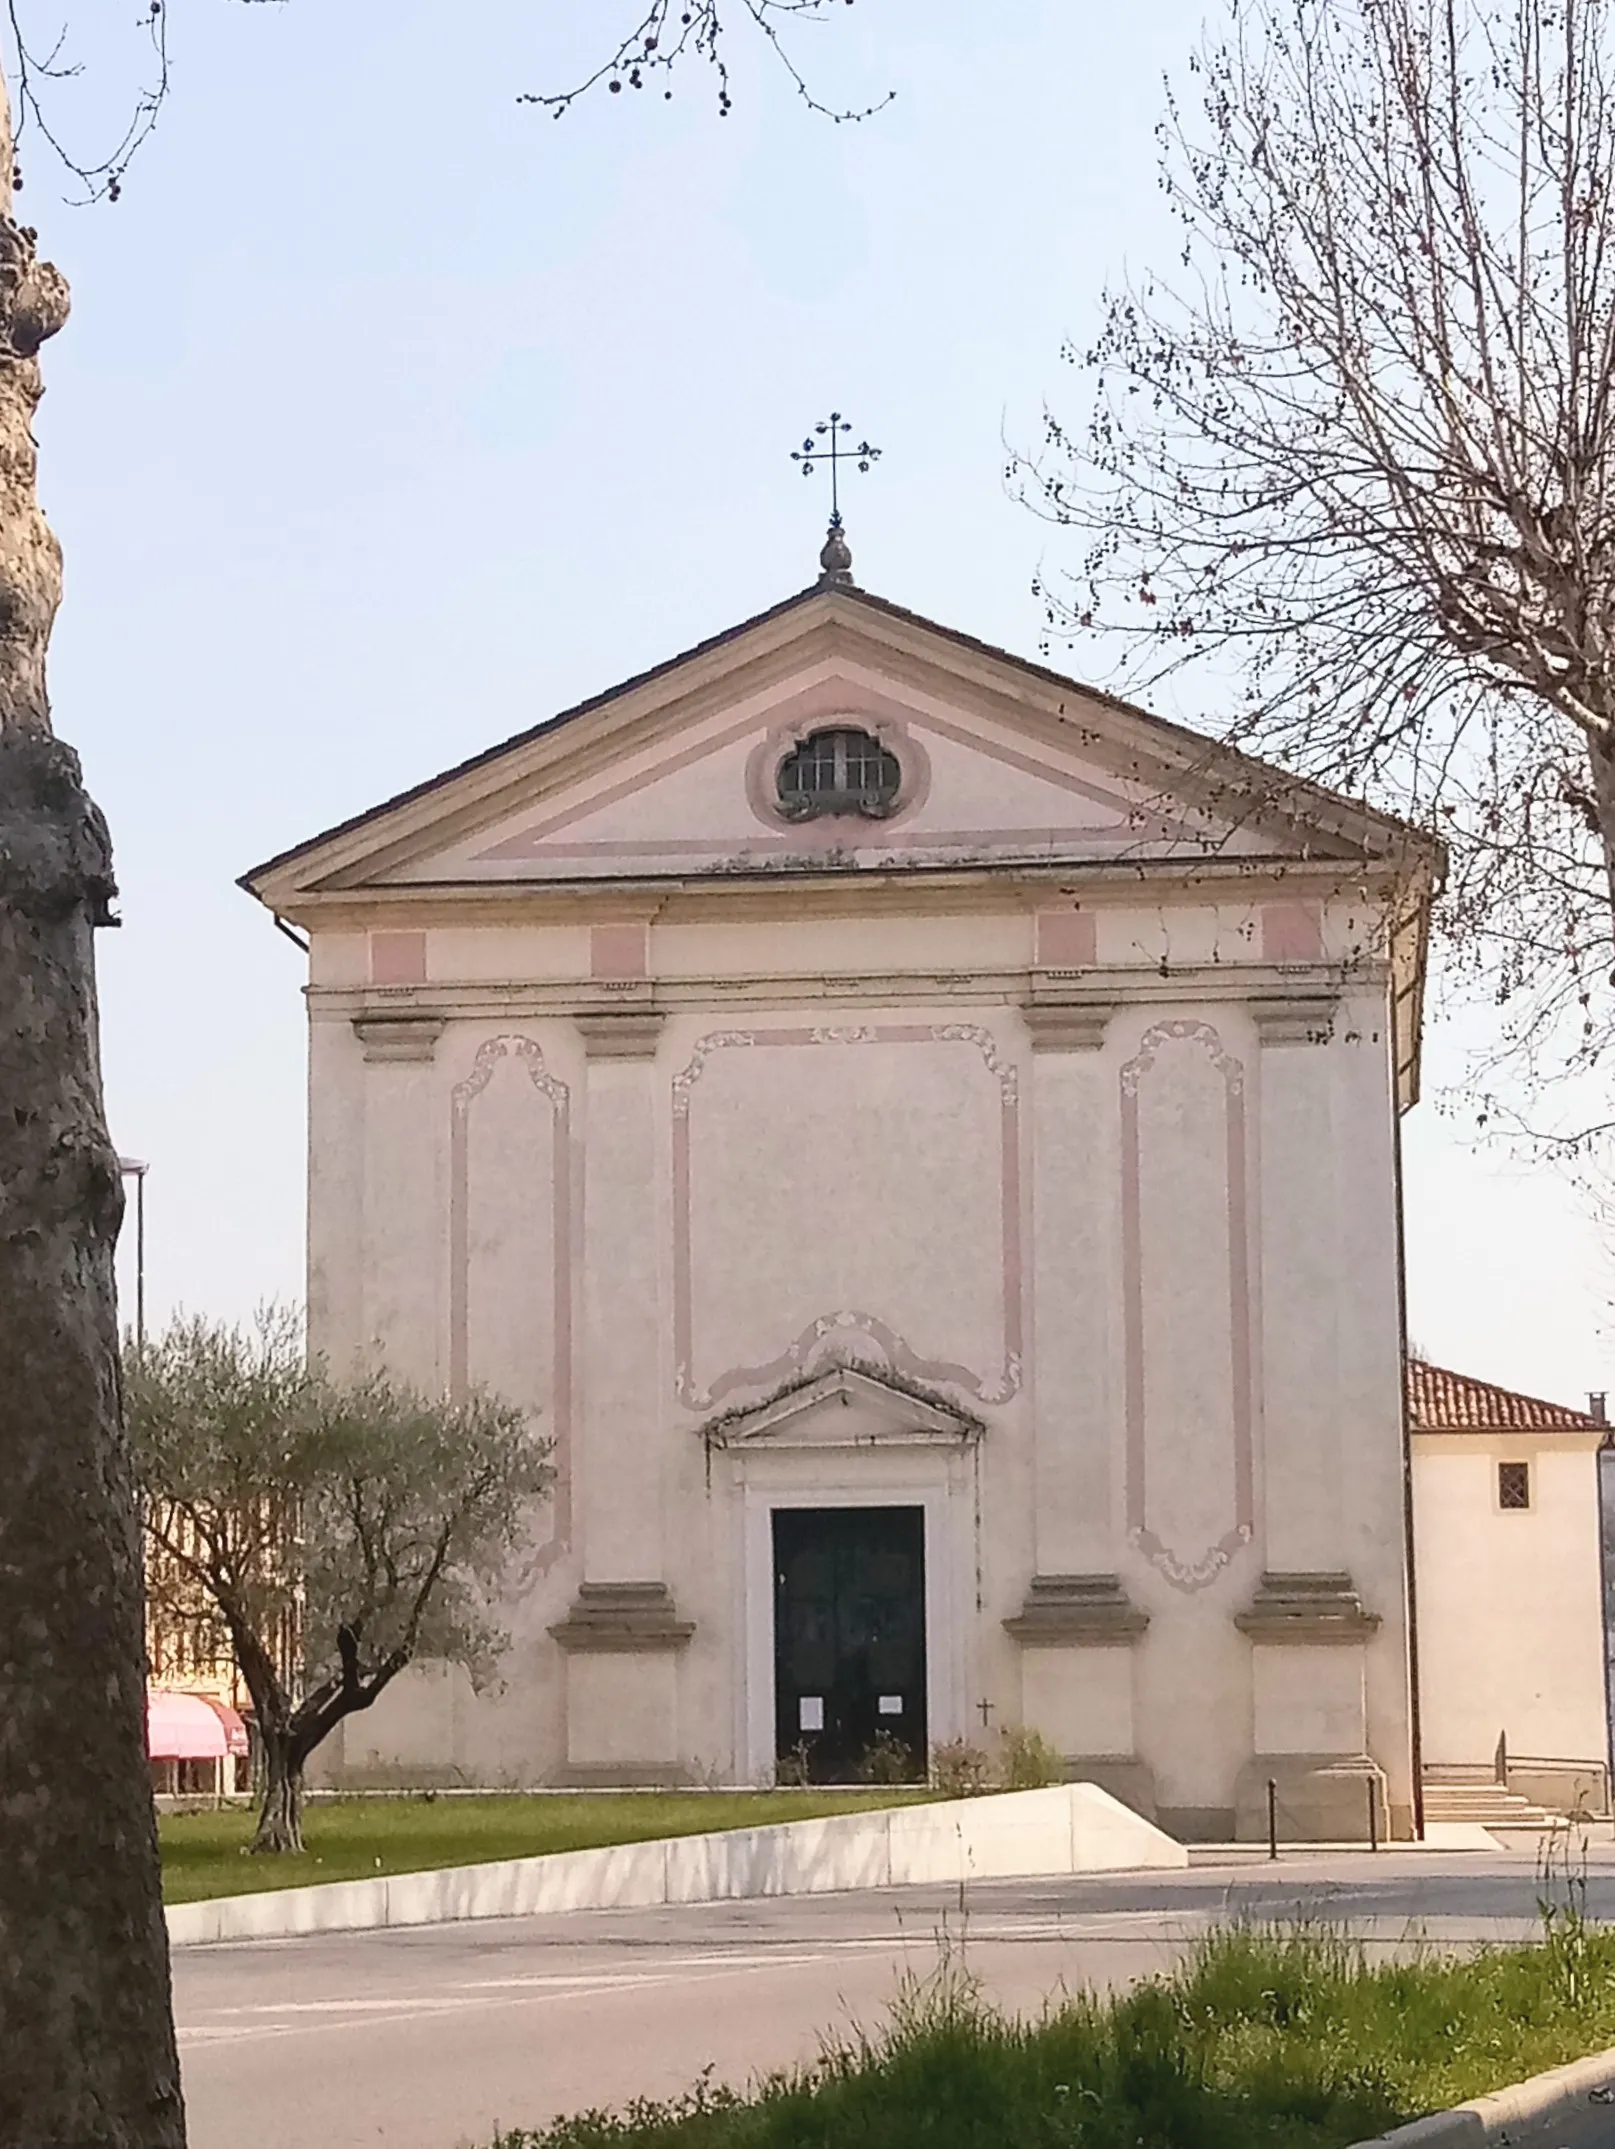 Photo showing: La facciata della chiesa di San Giacomo dall'ingresso del monastero cistercense